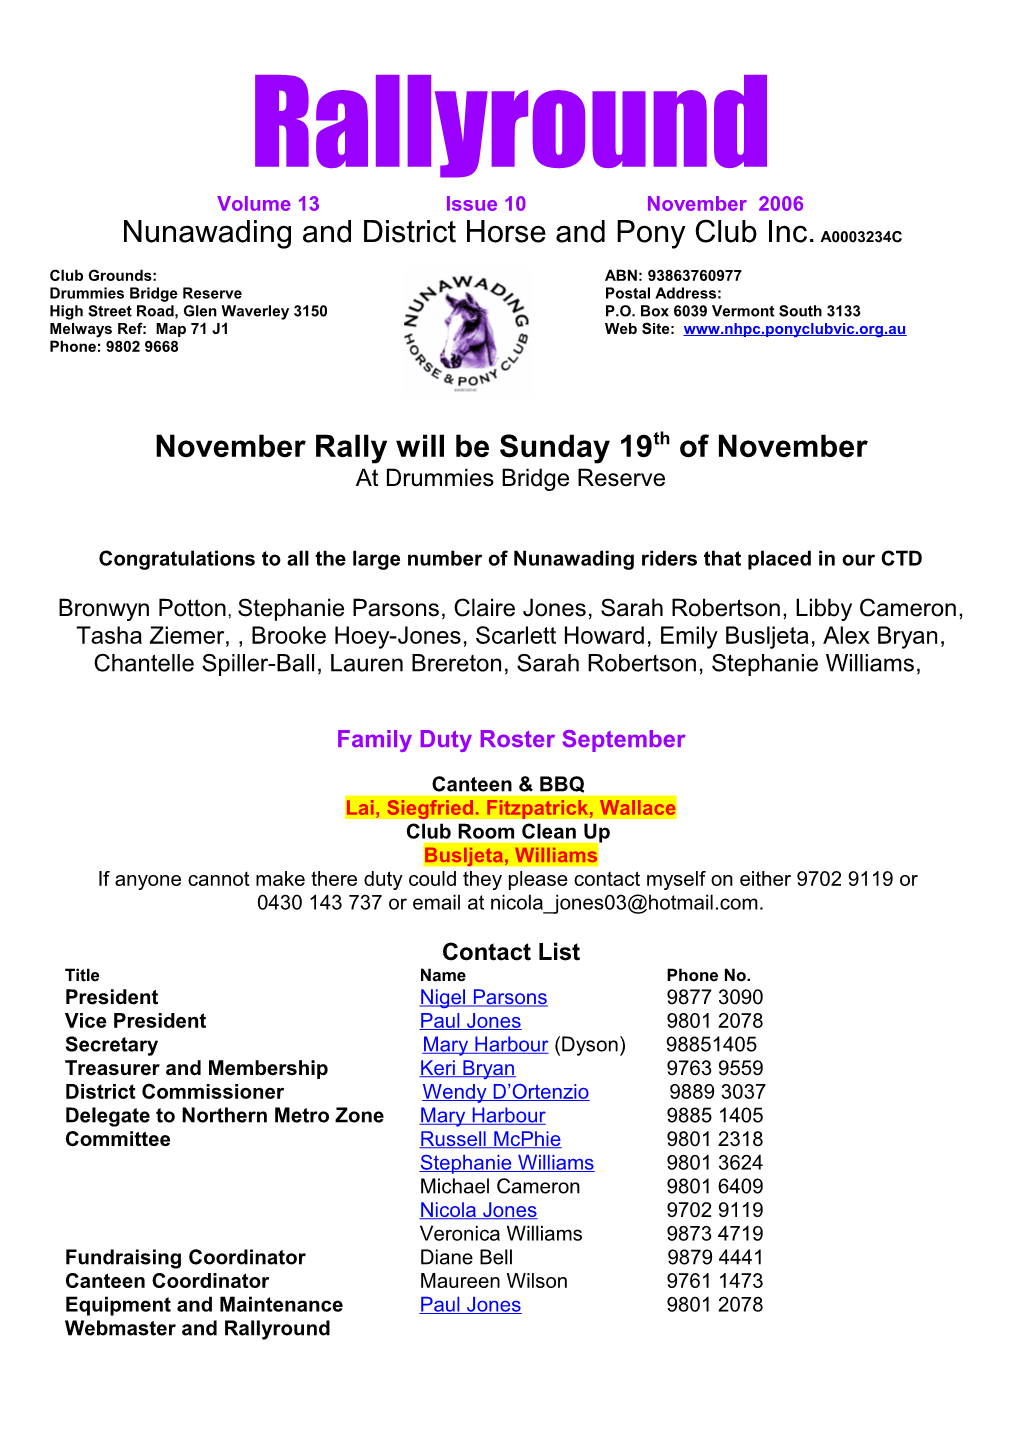 November Rally Will Be Sunday 19Th of November